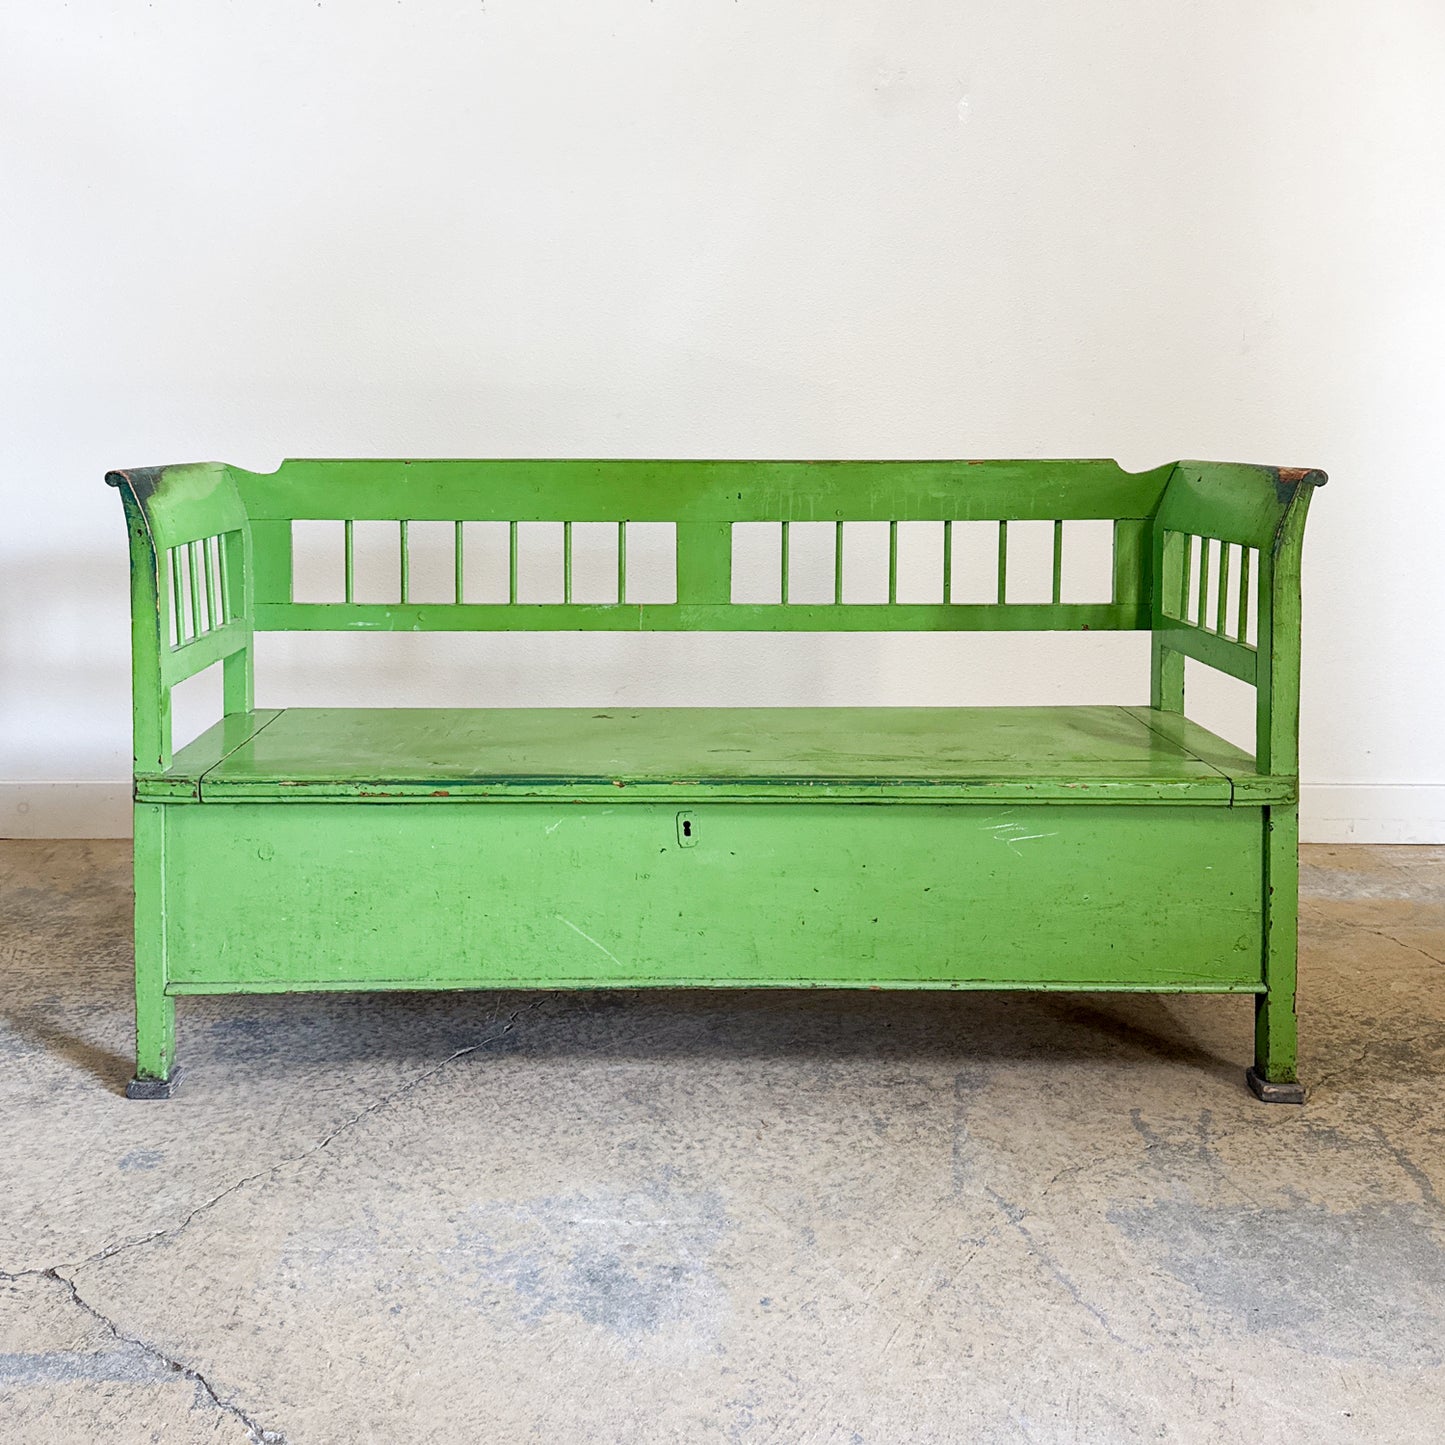 Antique Green European Bench with Storage